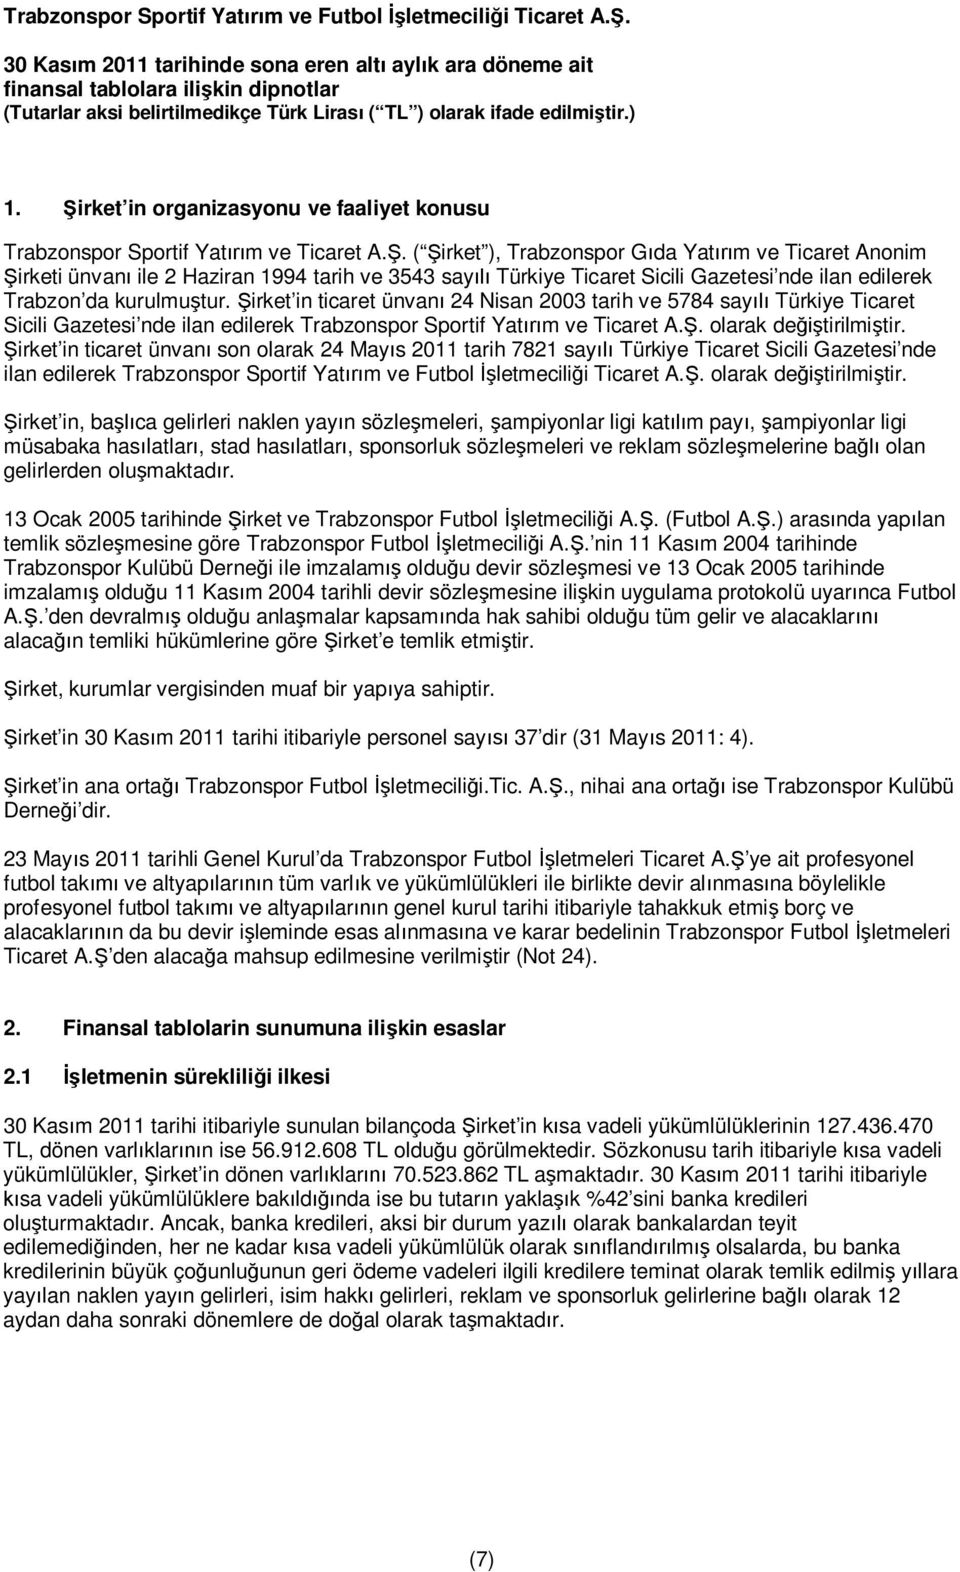 irket in ticaret ünvan 24 Nisan 2003 tarih ve 5784 say Türkiye Ticaret Sicili Gazetesi nde ilan edilerek Trabzonspor Sportif Yat m ve Ticaret A.. olarak de tirilmi tir.